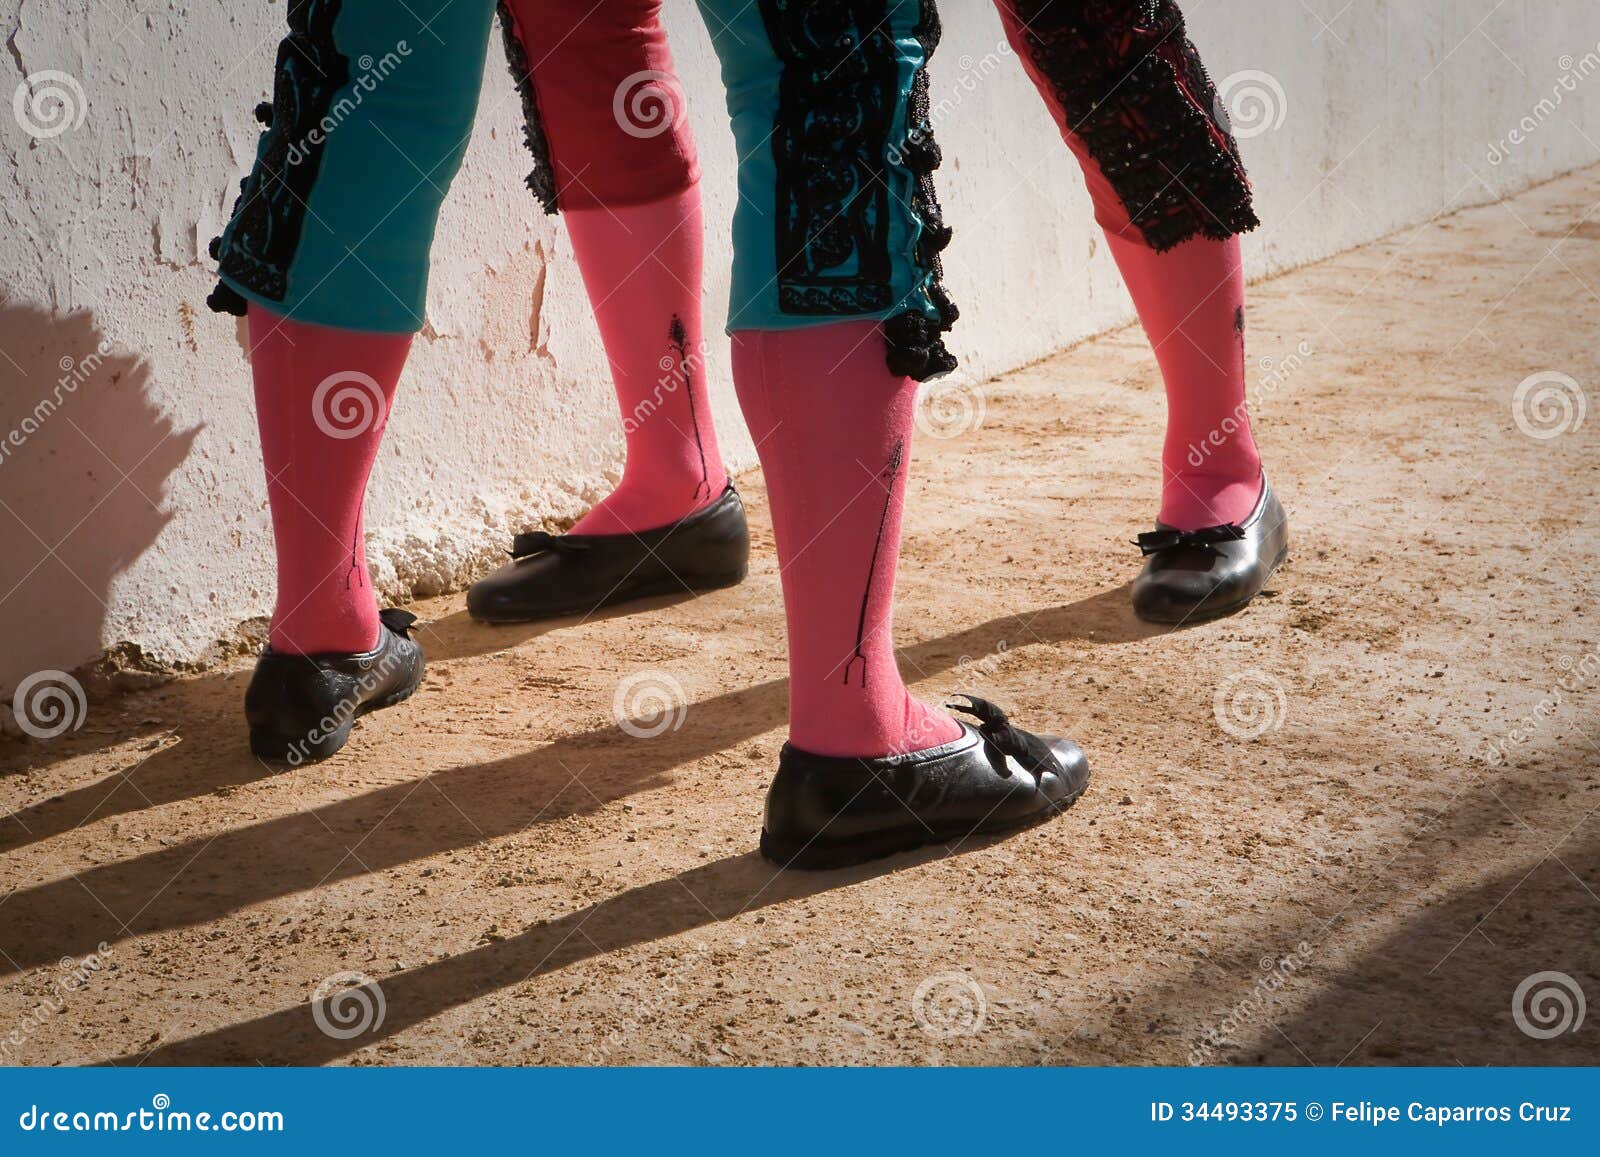 legs of bullfighters